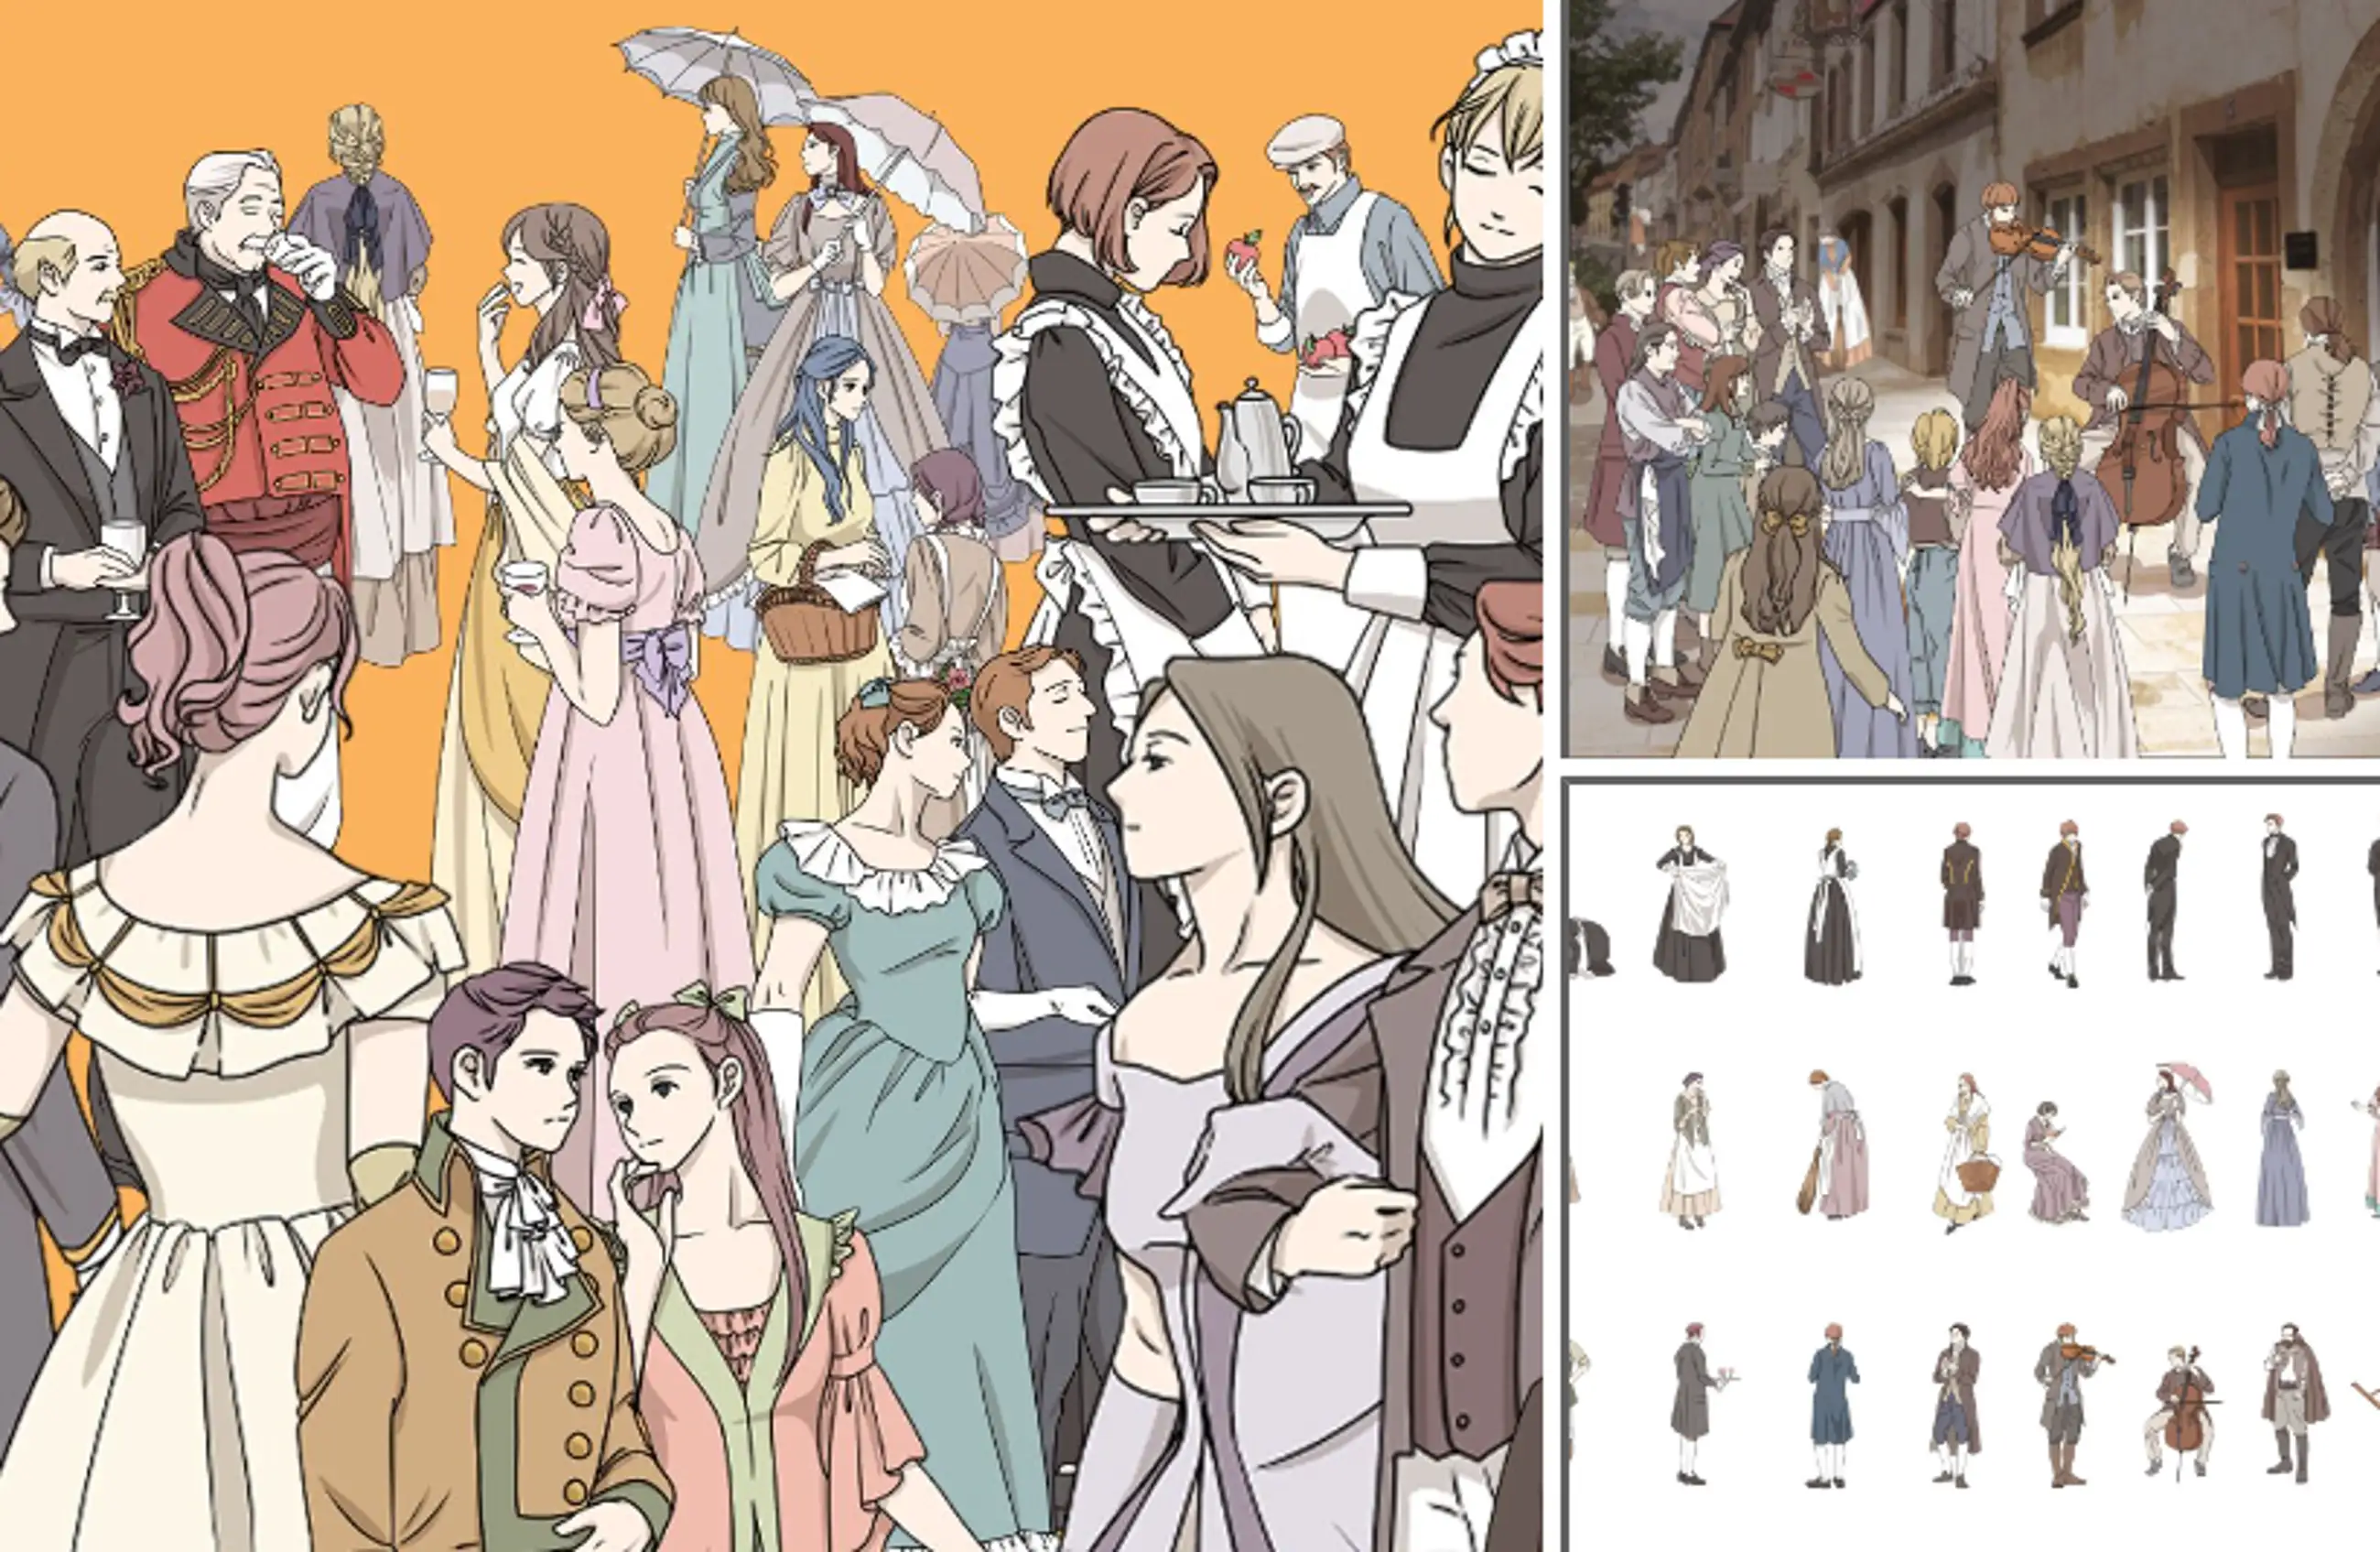 120 Medieval Romance Fantasy Extra Illustrations